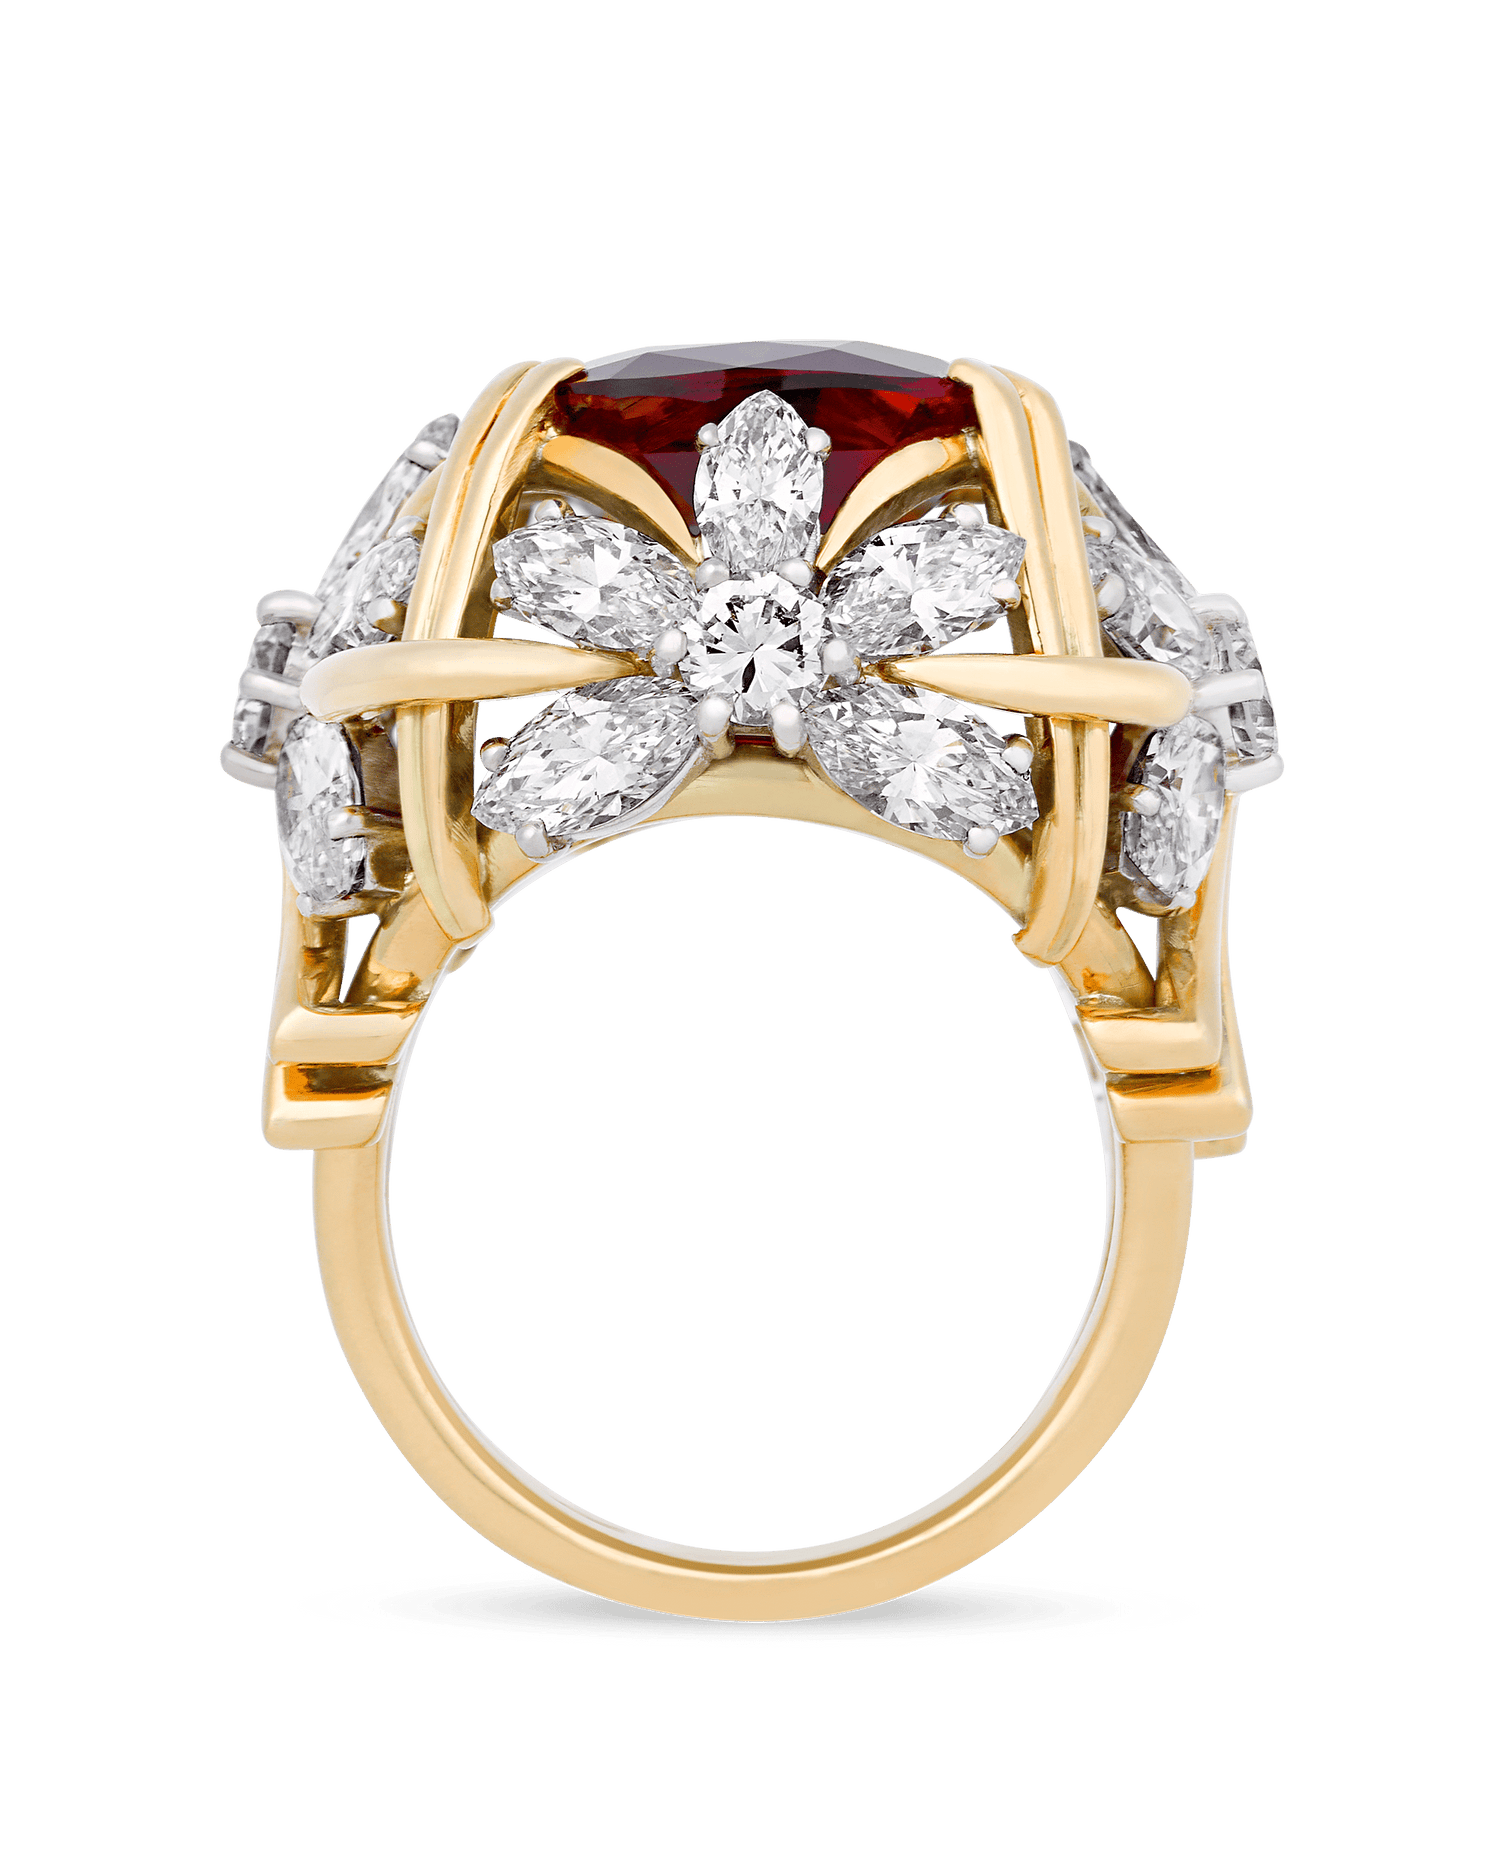 Tiffany & Co. Ruby Ring, 11.71 Carats